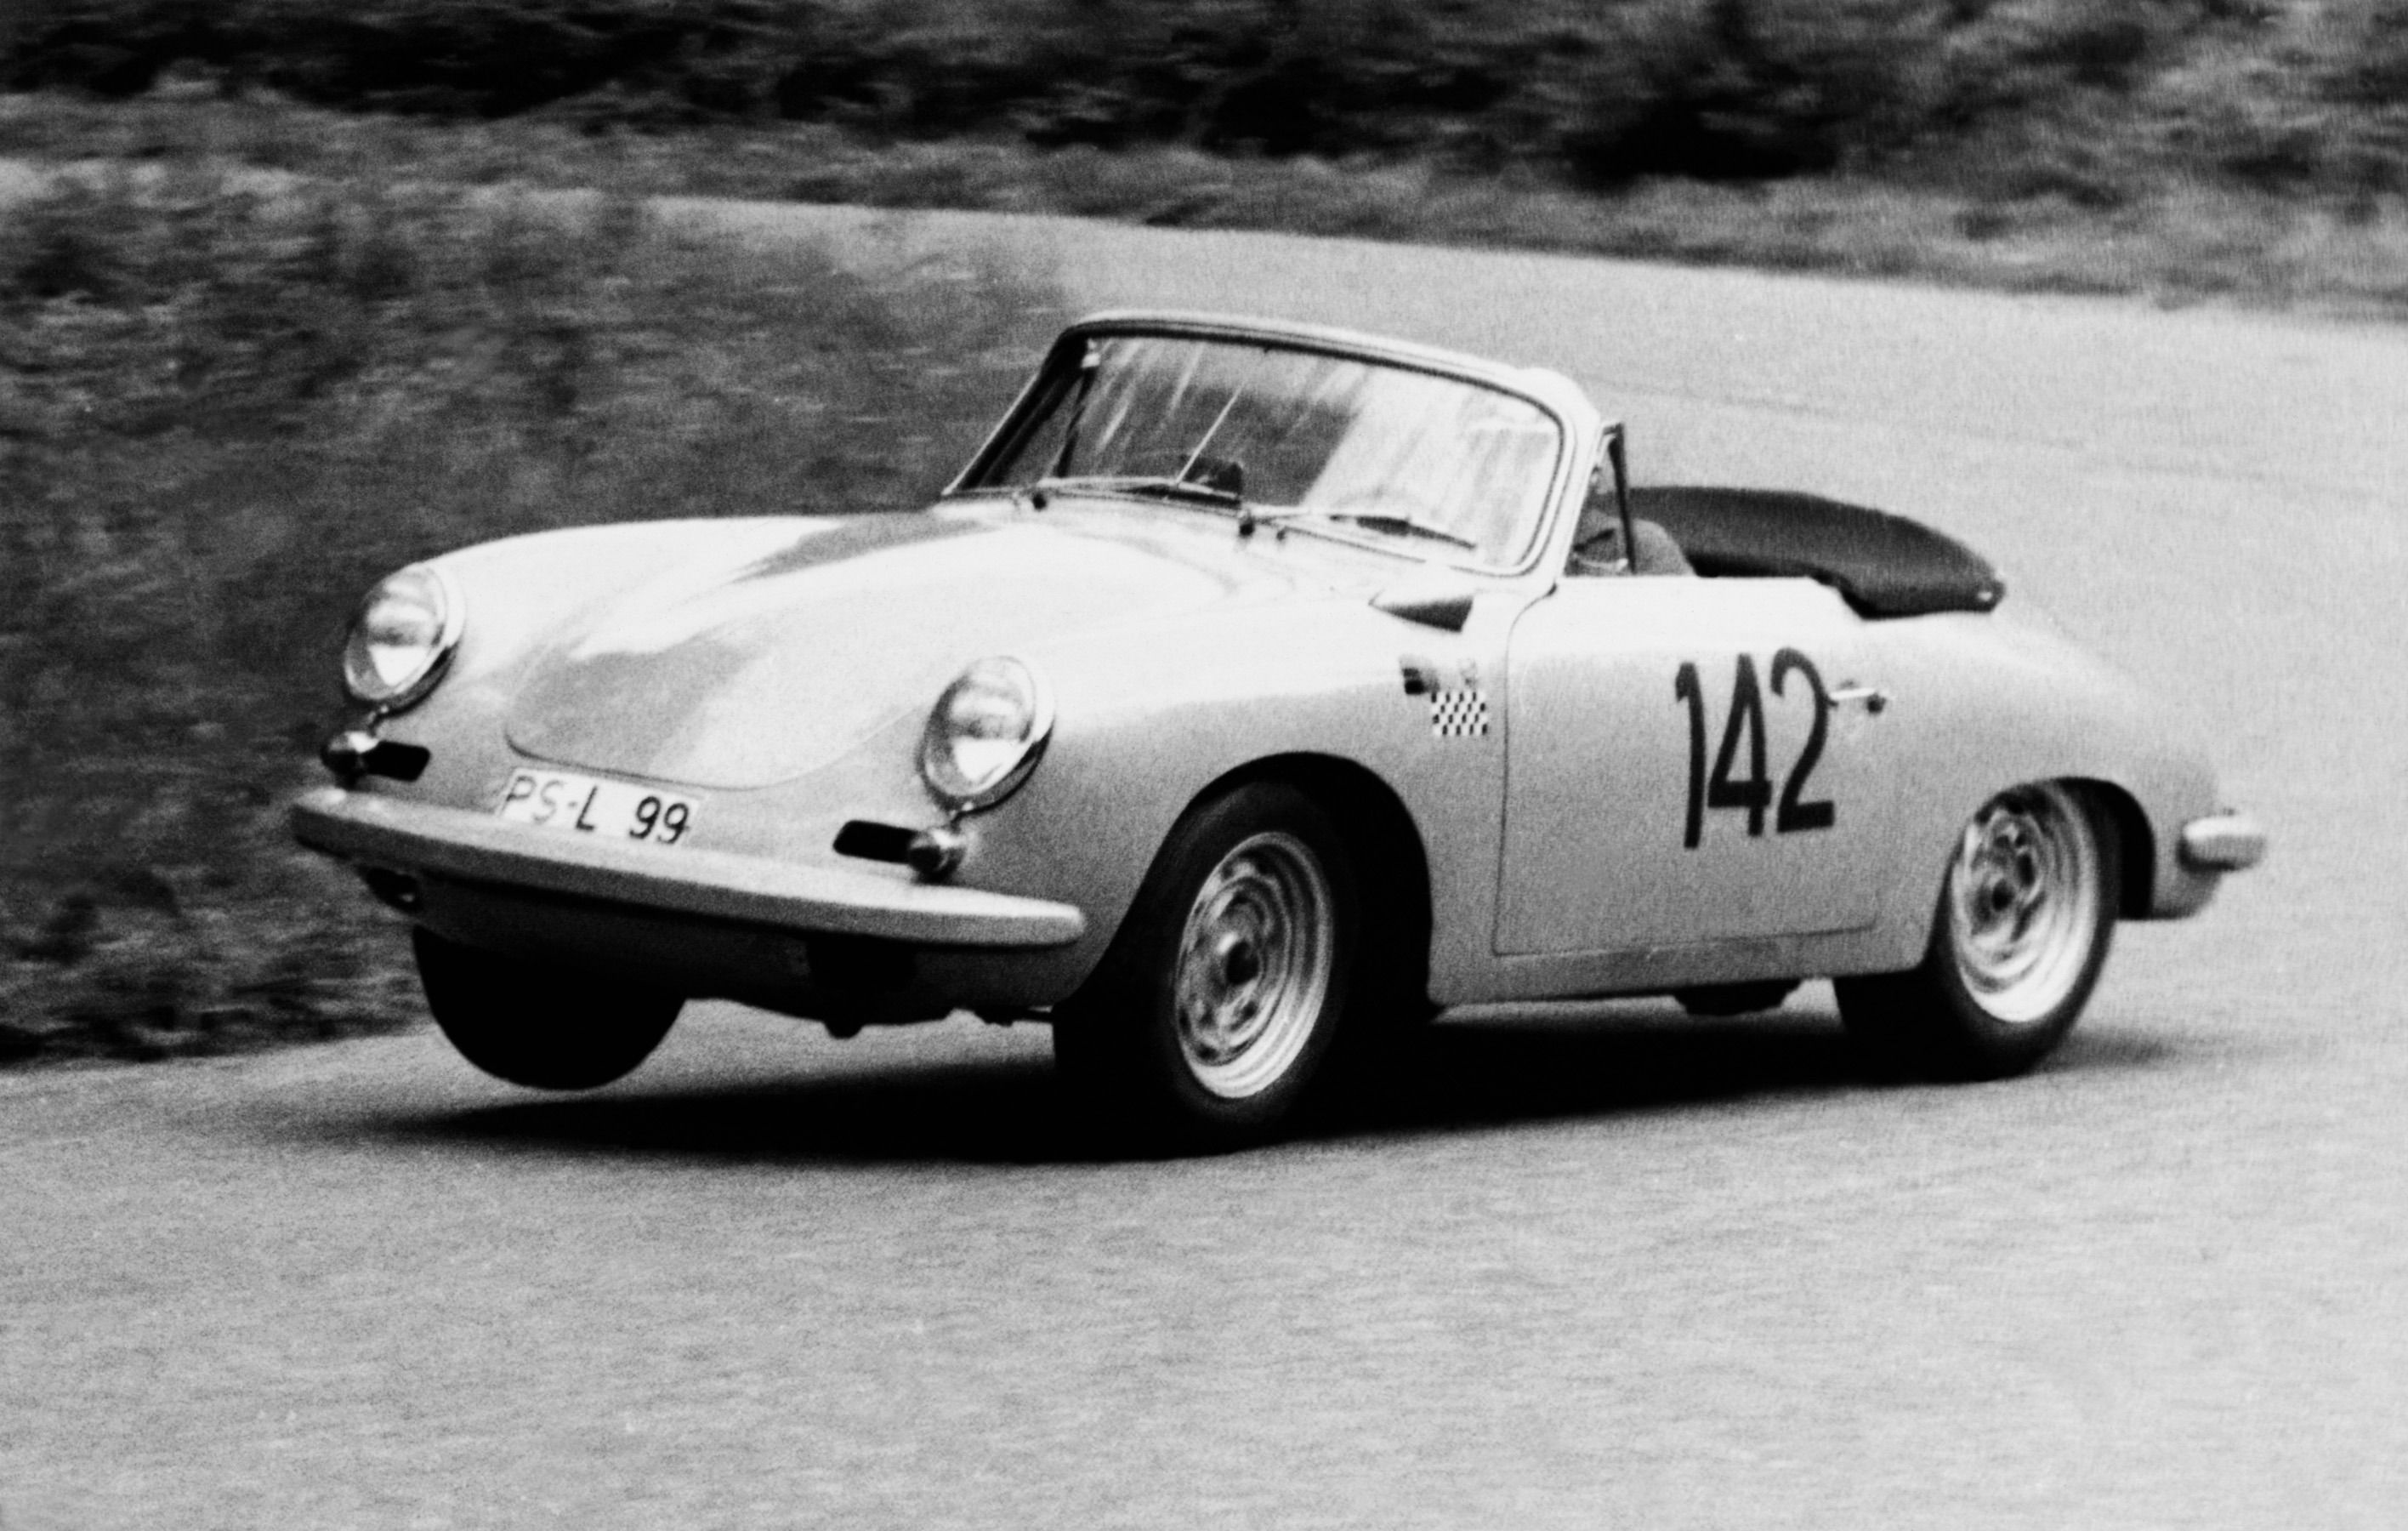 1959 - 1965 Porsche 356b